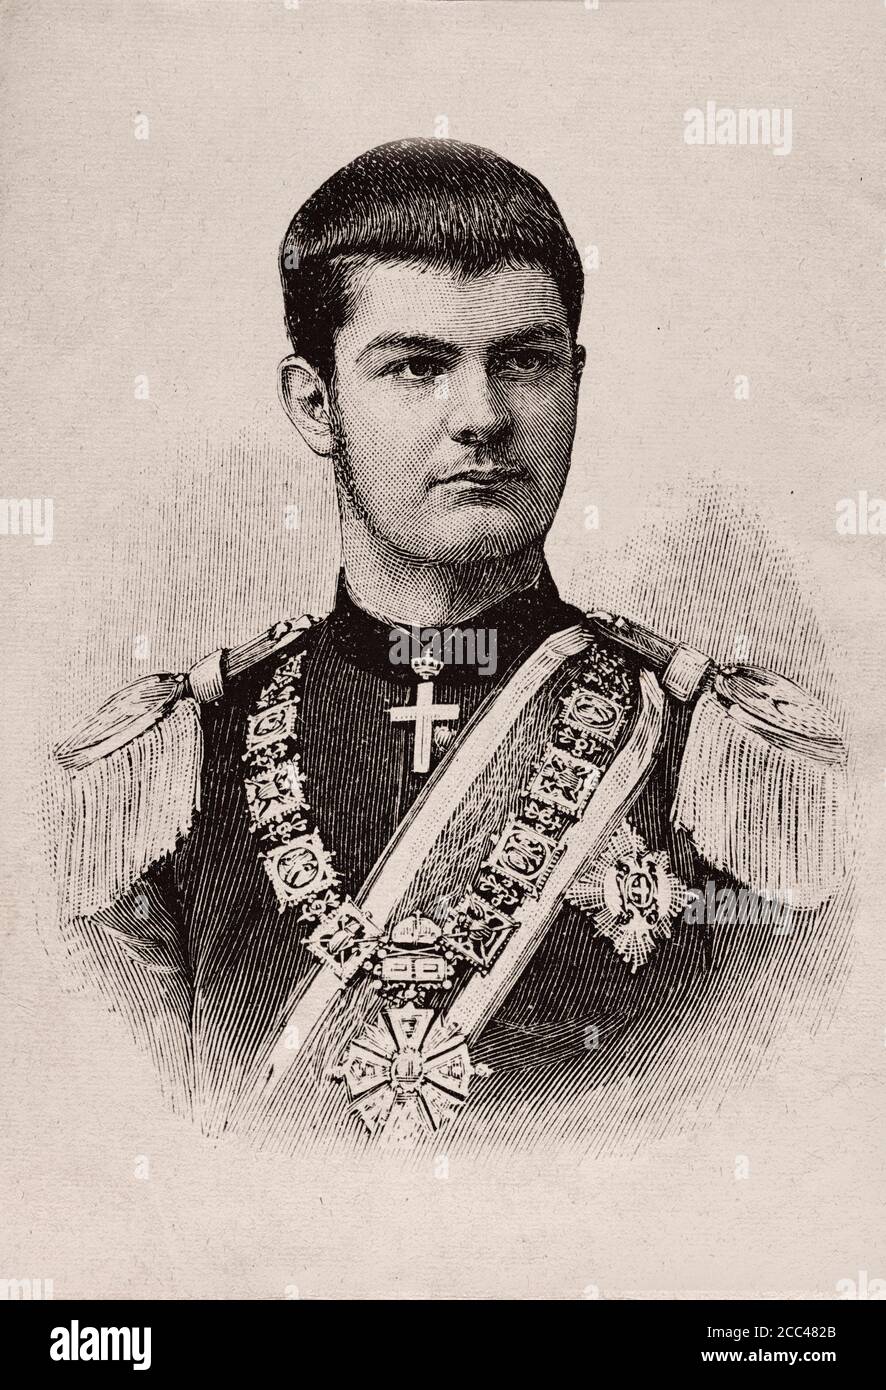 Alexander I o Aleksandar Obrenovic (1876 – 1903) fue rey de Serbia de 1889 a 1903 cuando él y su esposa, Draga Masin, fueron asesinados por un grupo Foto de stock